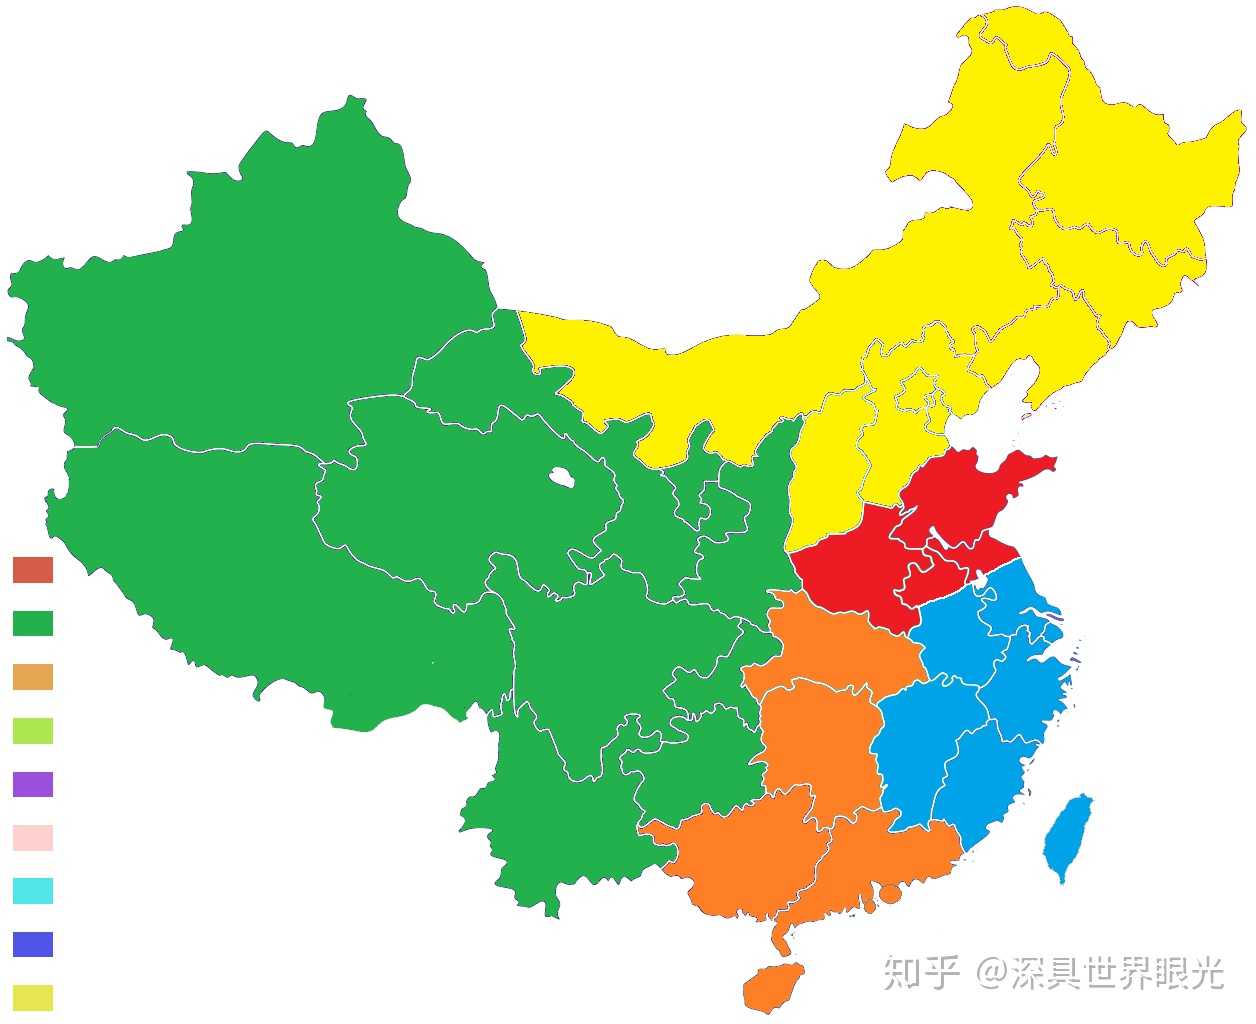 7亿左右 2,为了方便,"皖北 苏北"是用安徽省数据代替的 3,gdp排名与人图片